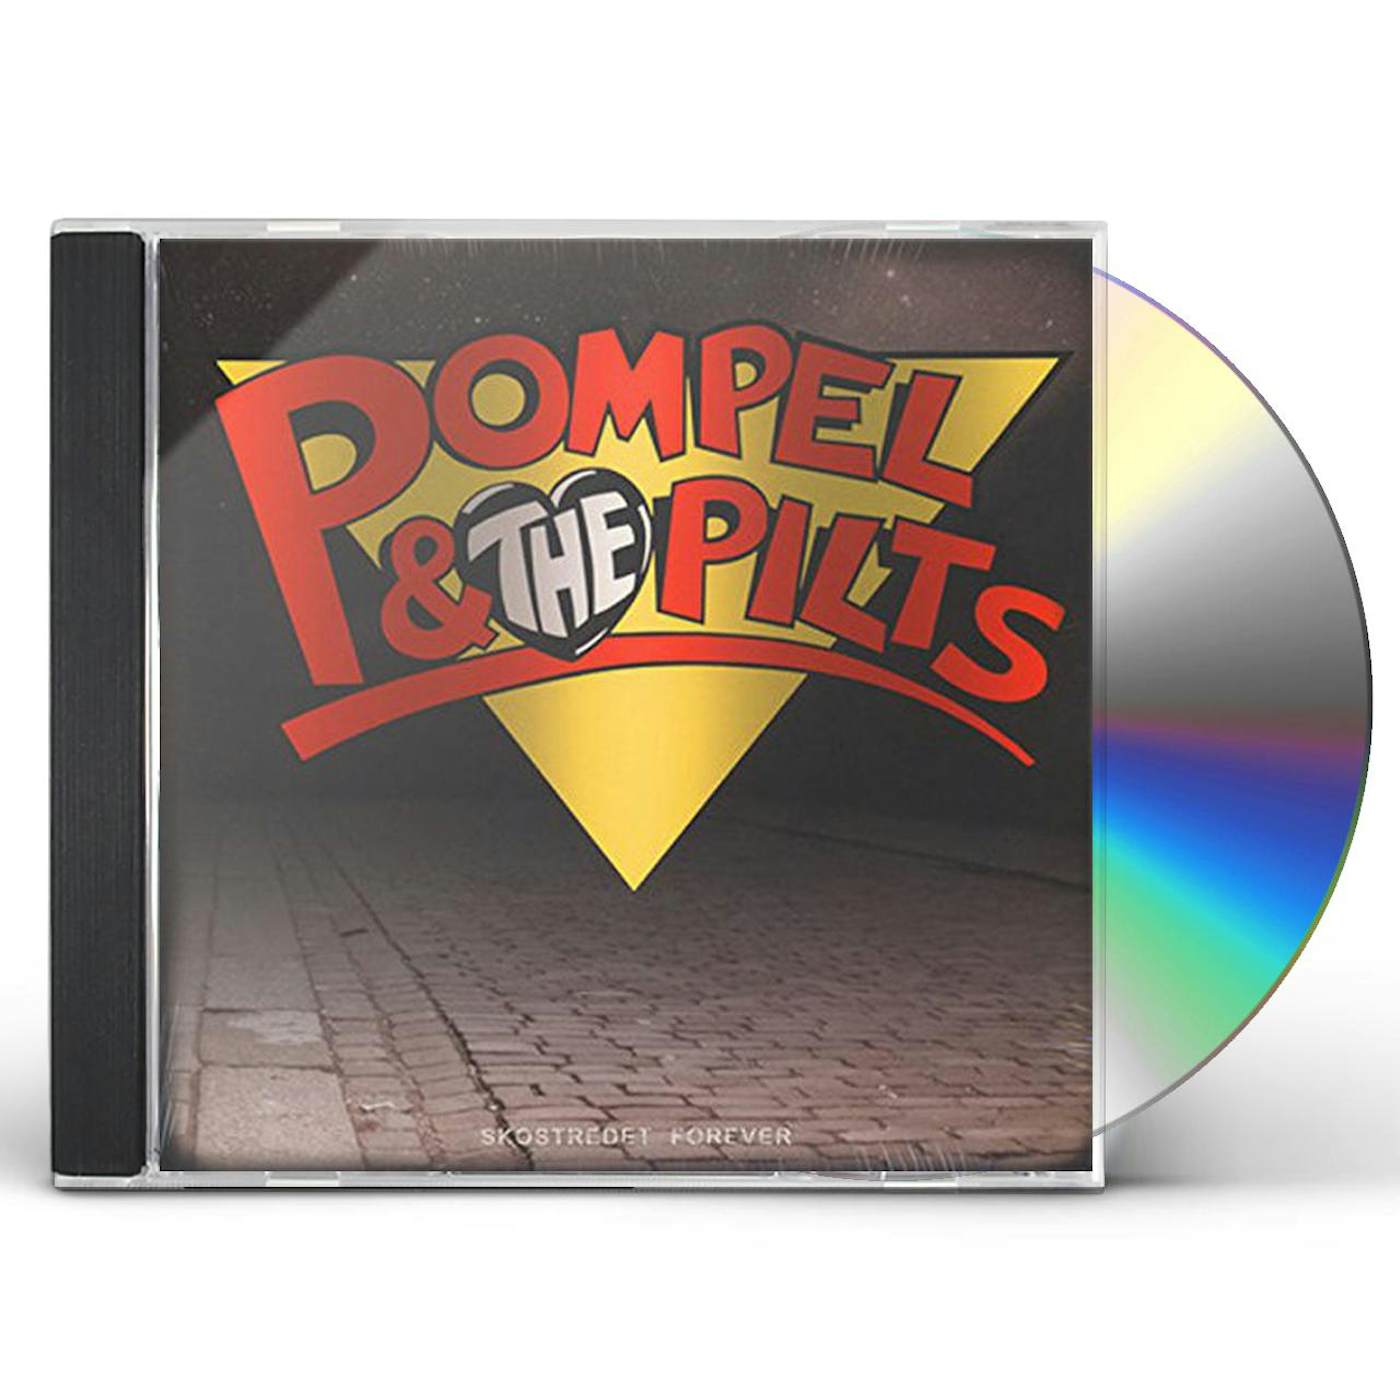 Pompel & The Pilts SKOSTREDET FOREVER CD